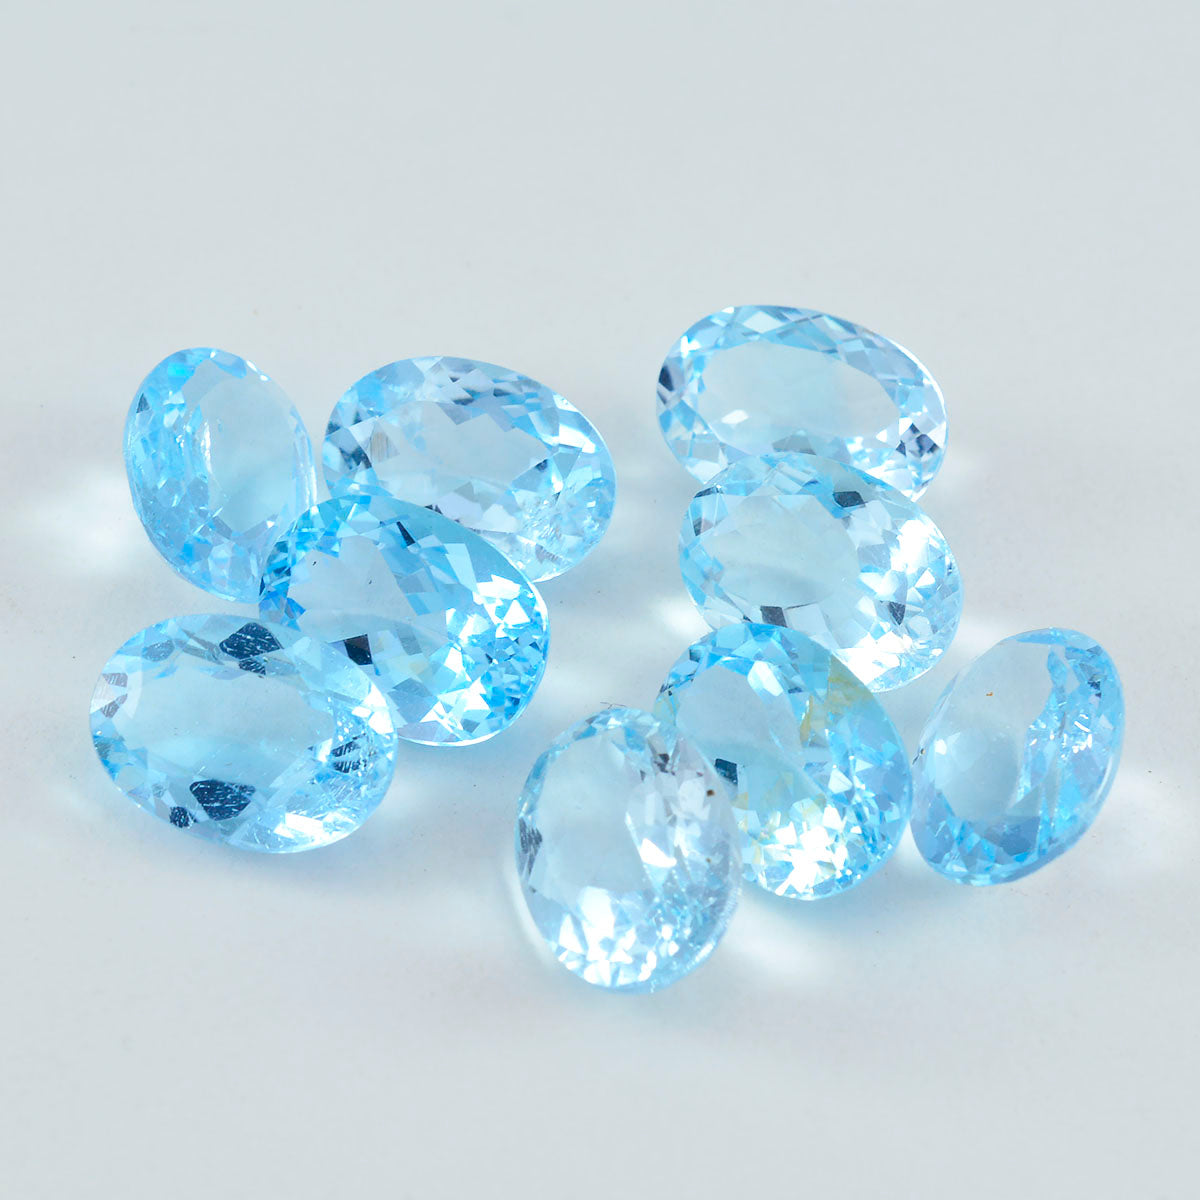 riyogems 1шт натуральный голубой топаз ограненный 8x10 мм овальной формы хорошее качество россыпь драгоценных камней